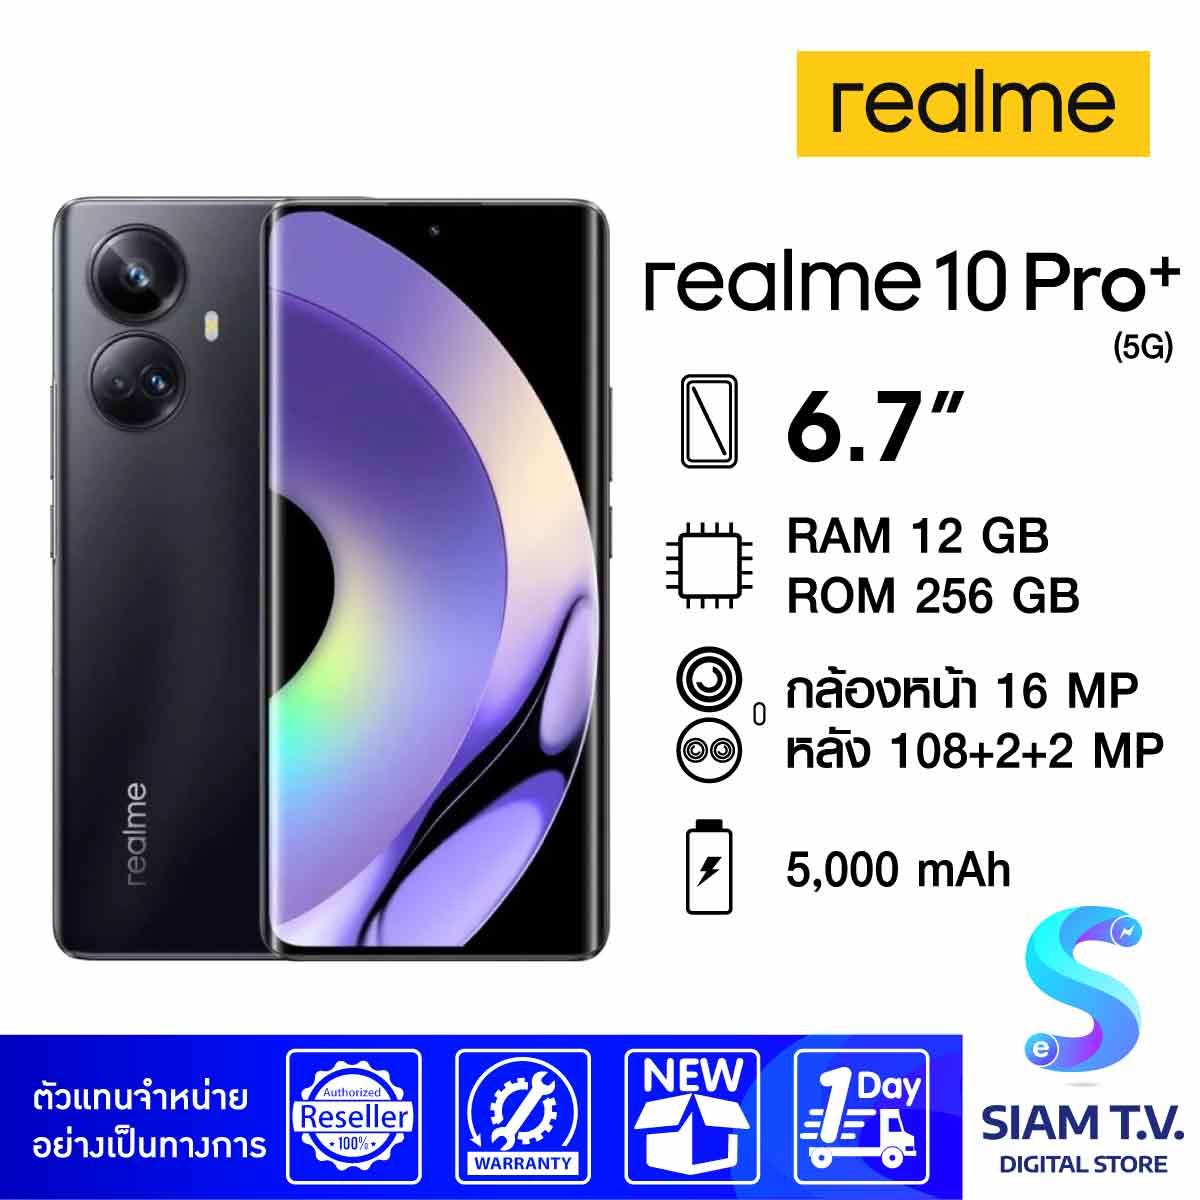 realme 10 Pro+ 5G